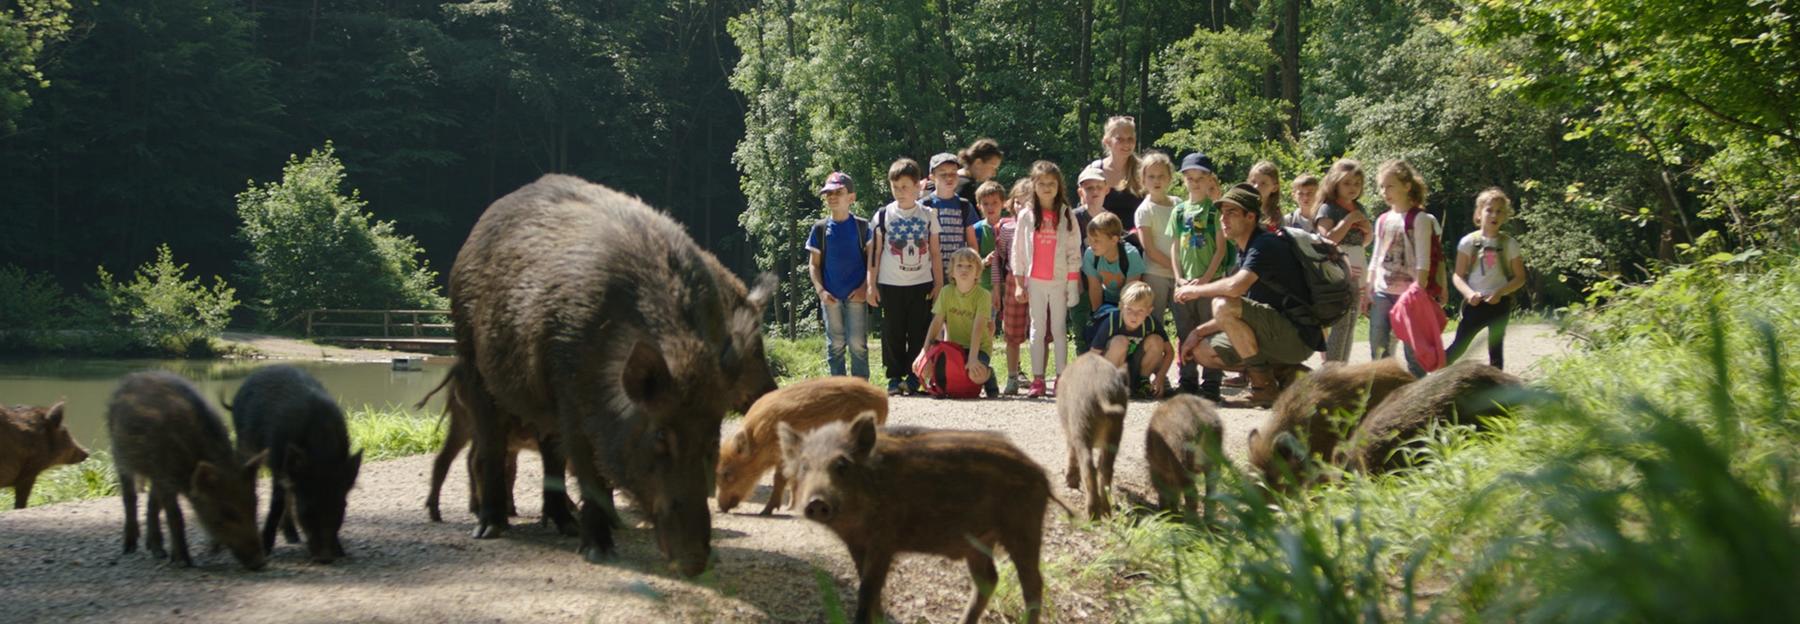 Wildschweine sind die Besucherattraktion im Naturpark Sparbach